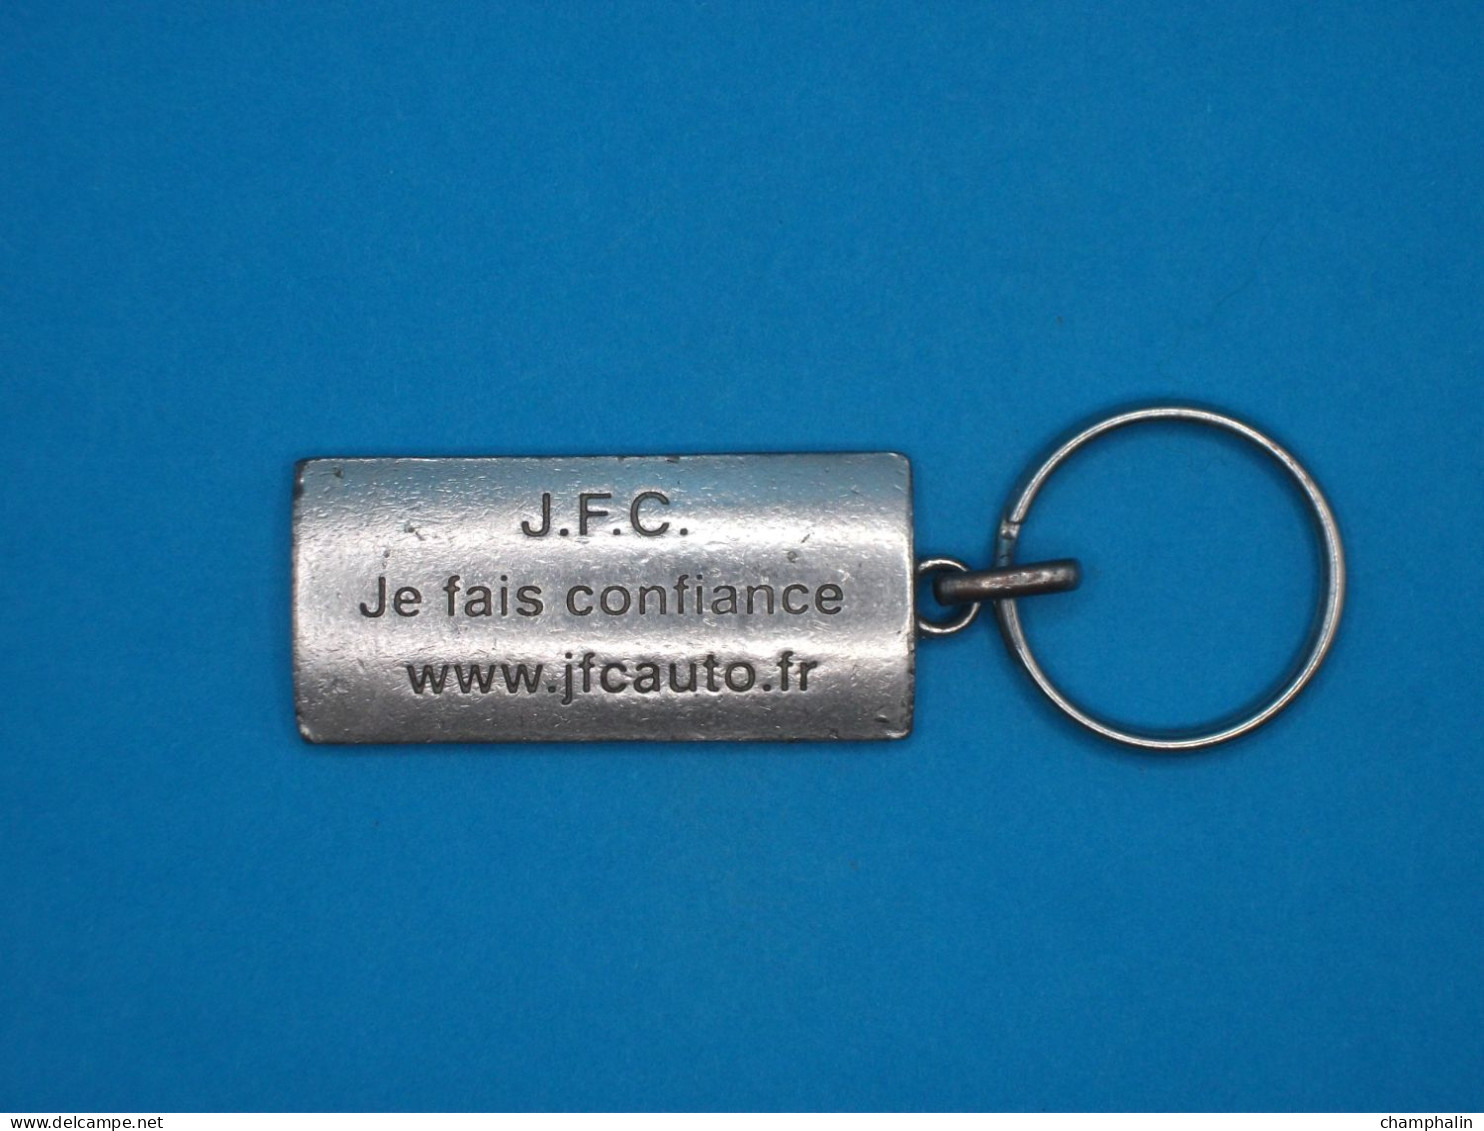 Porte-clé Métal - Ssangyong - J.F.C. Automobile - Www.jfcauto.fr - Je Fais Confiance - Voiture Concessionnaire Garage - Key-rings